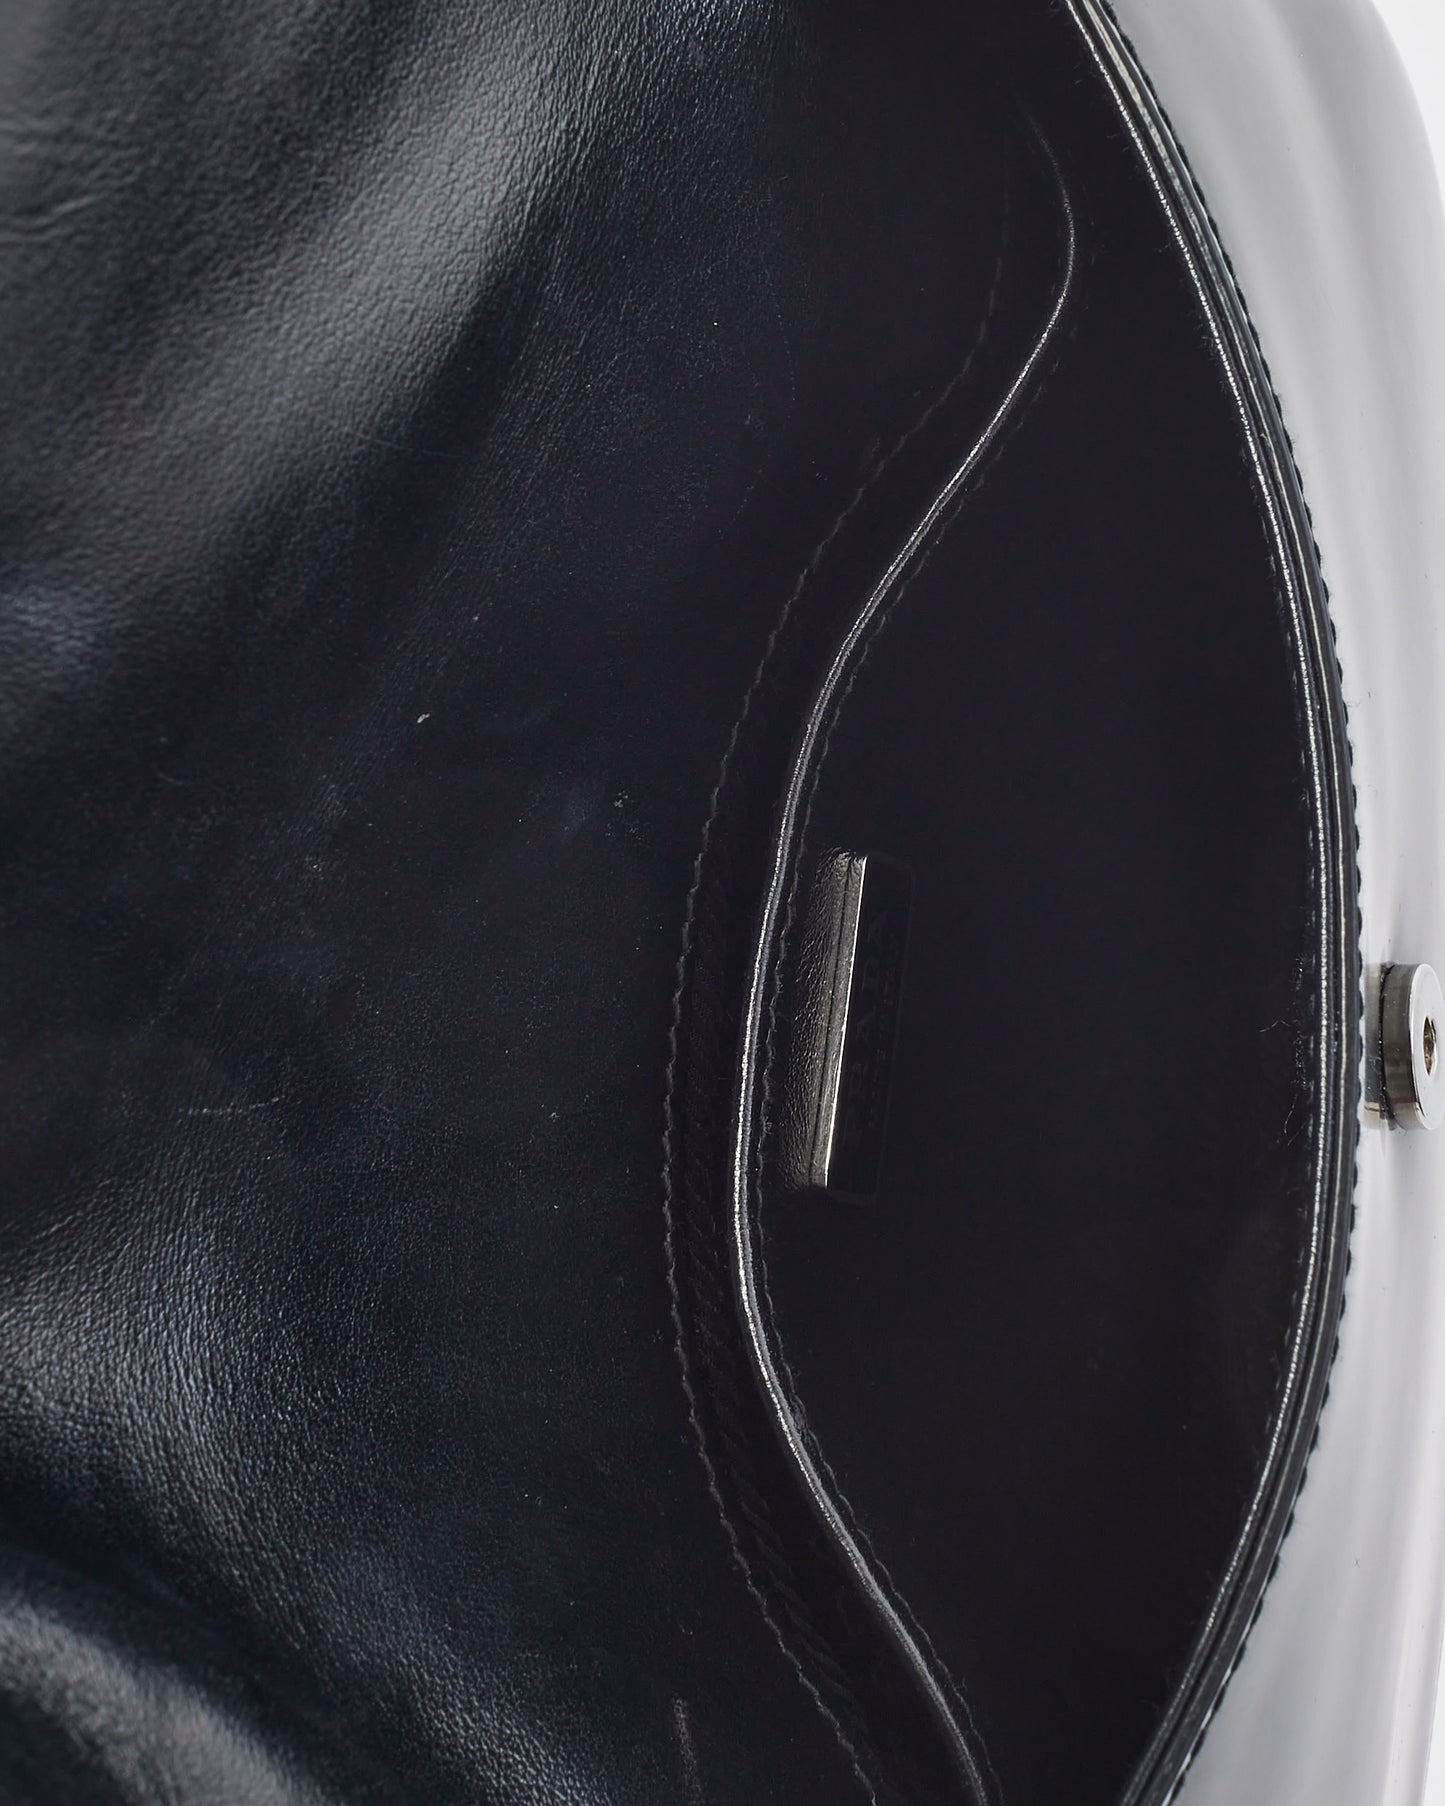 Prada Black Brushed Leather Small Flap Cleo Shoulder Bag